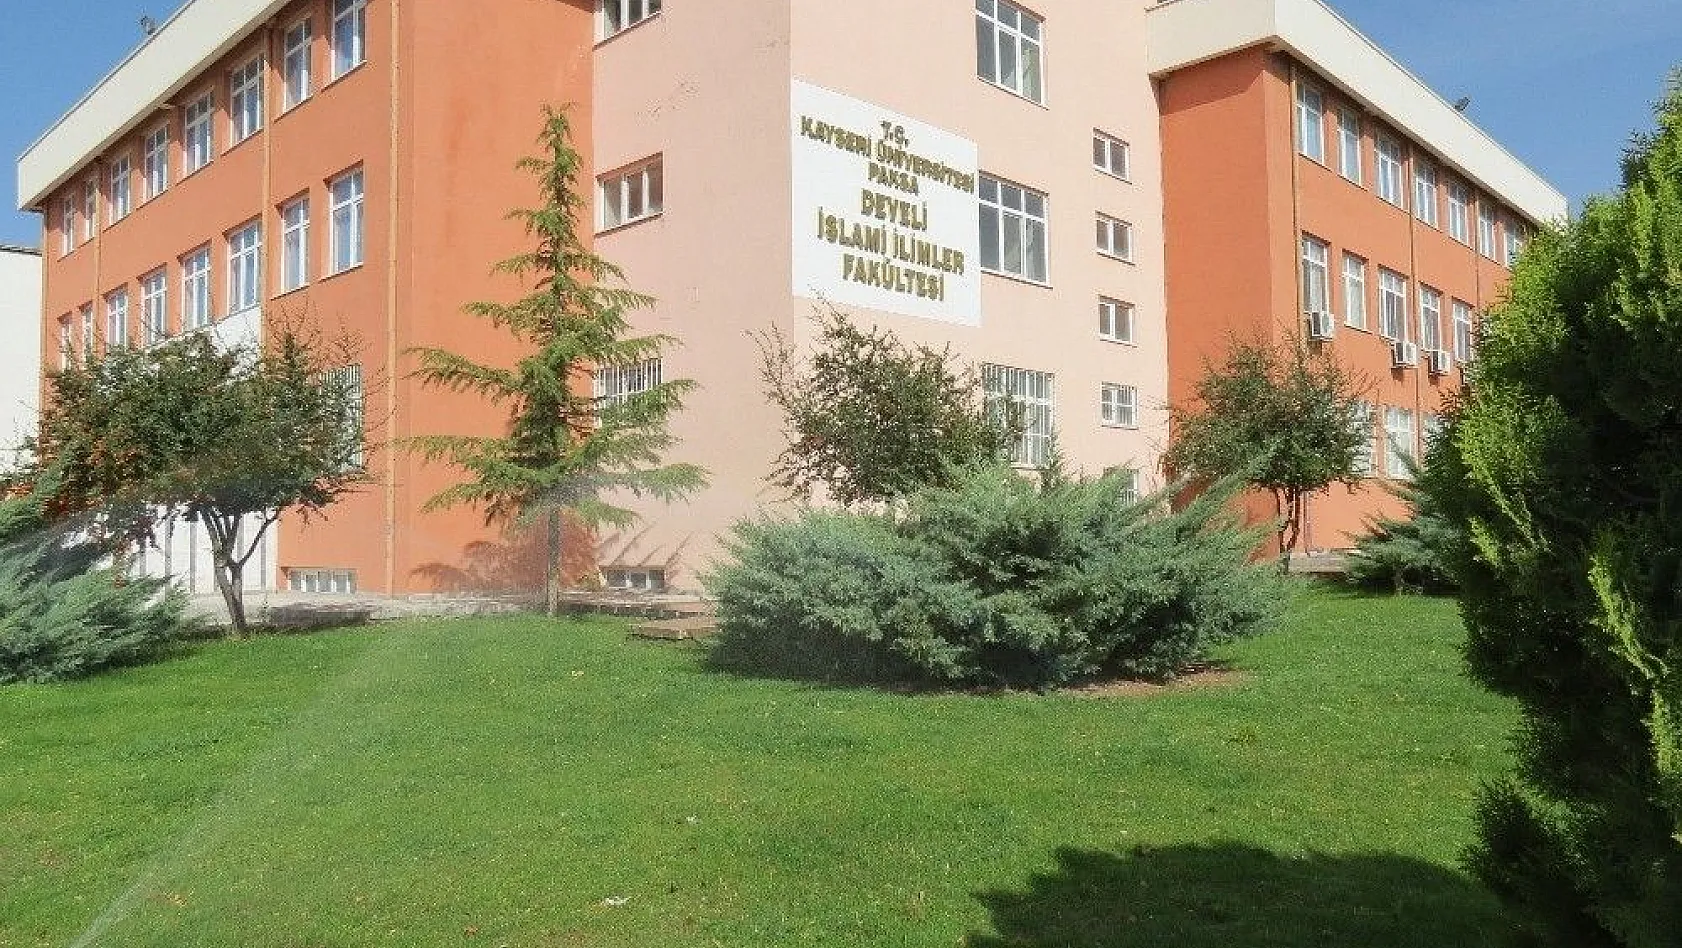 Kayseri Üniversitesi'nden Büyükşehir Belediyesi'ne Teşekkür